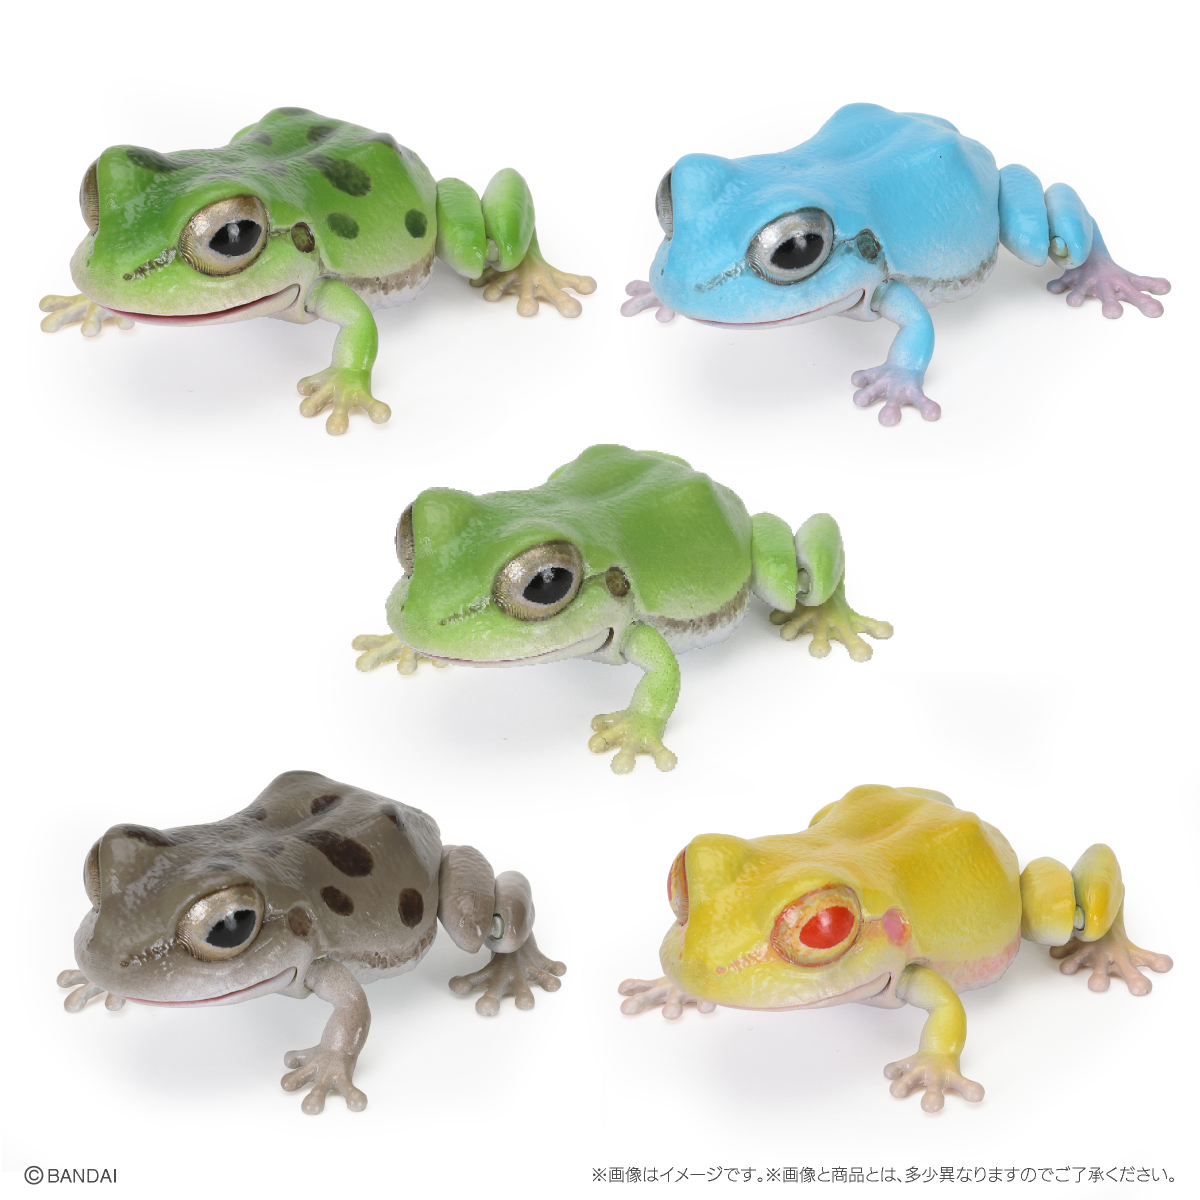 10月预售 万代 扭蛋 生物大图鉴 青蛙 日本 树蛙 东北雨蛙 摆件 - 图3